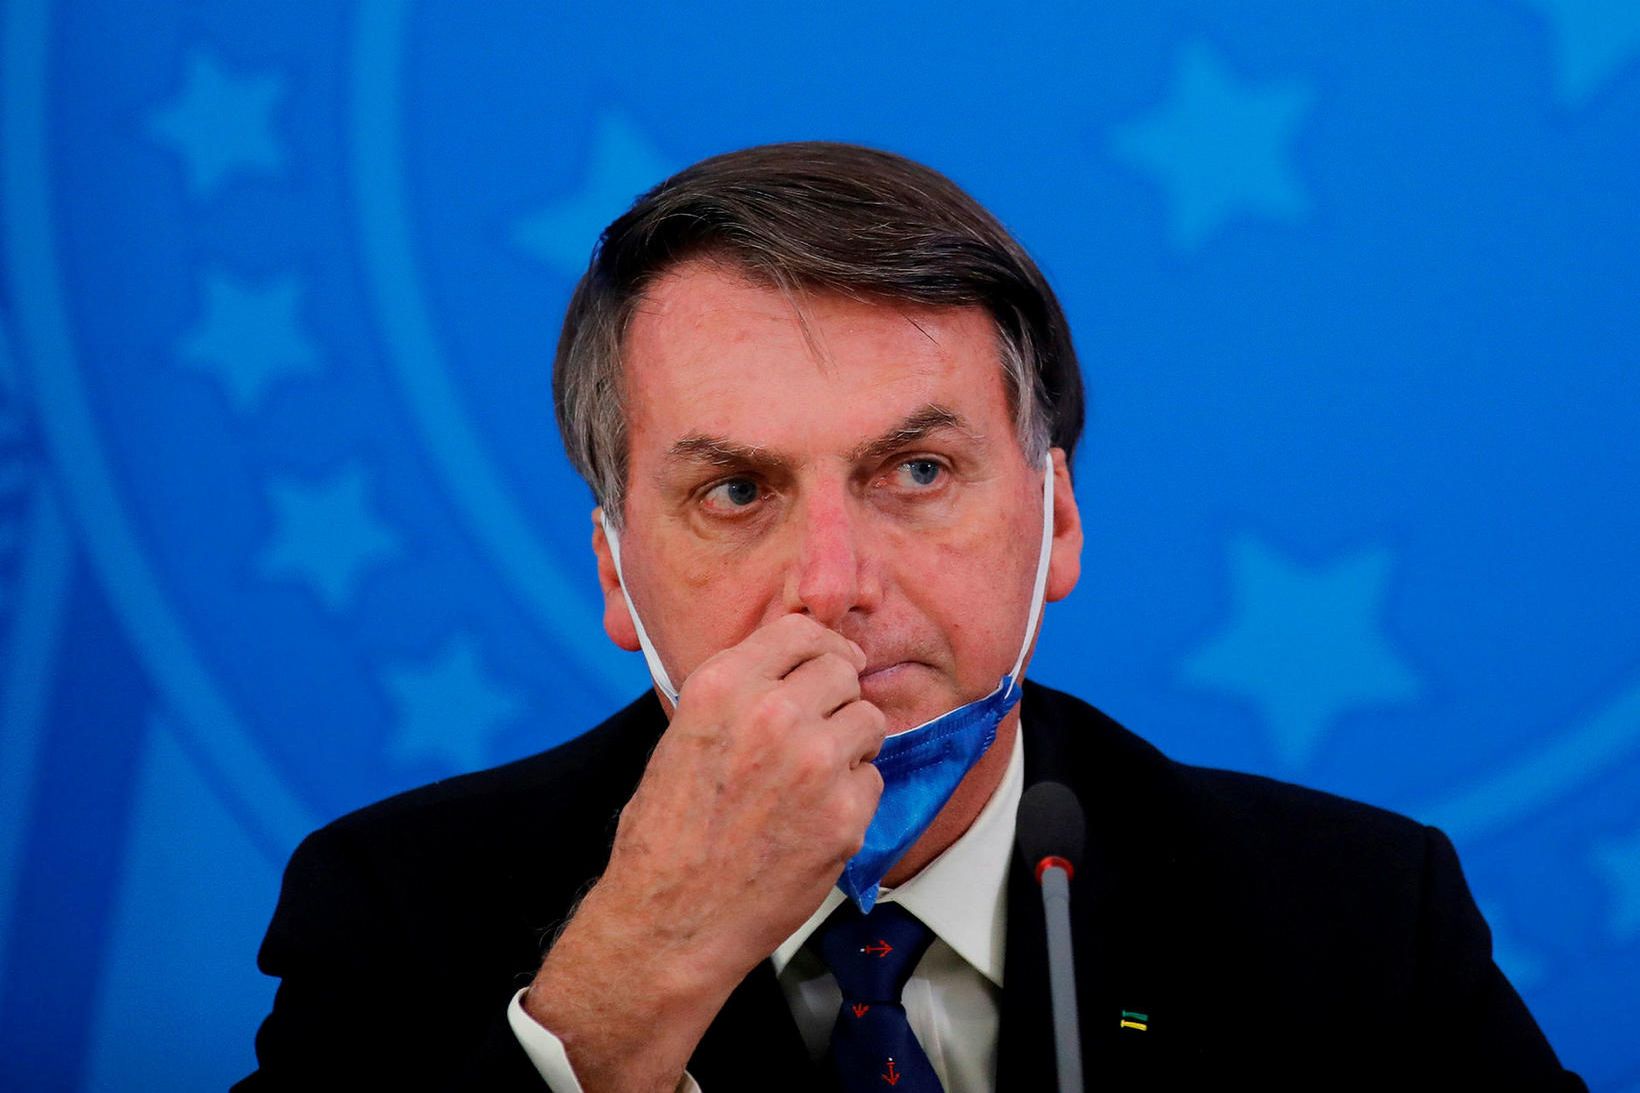 Bolsonaro hefur ítrekað gert lítið úr kórónuveirufaraldrinum.